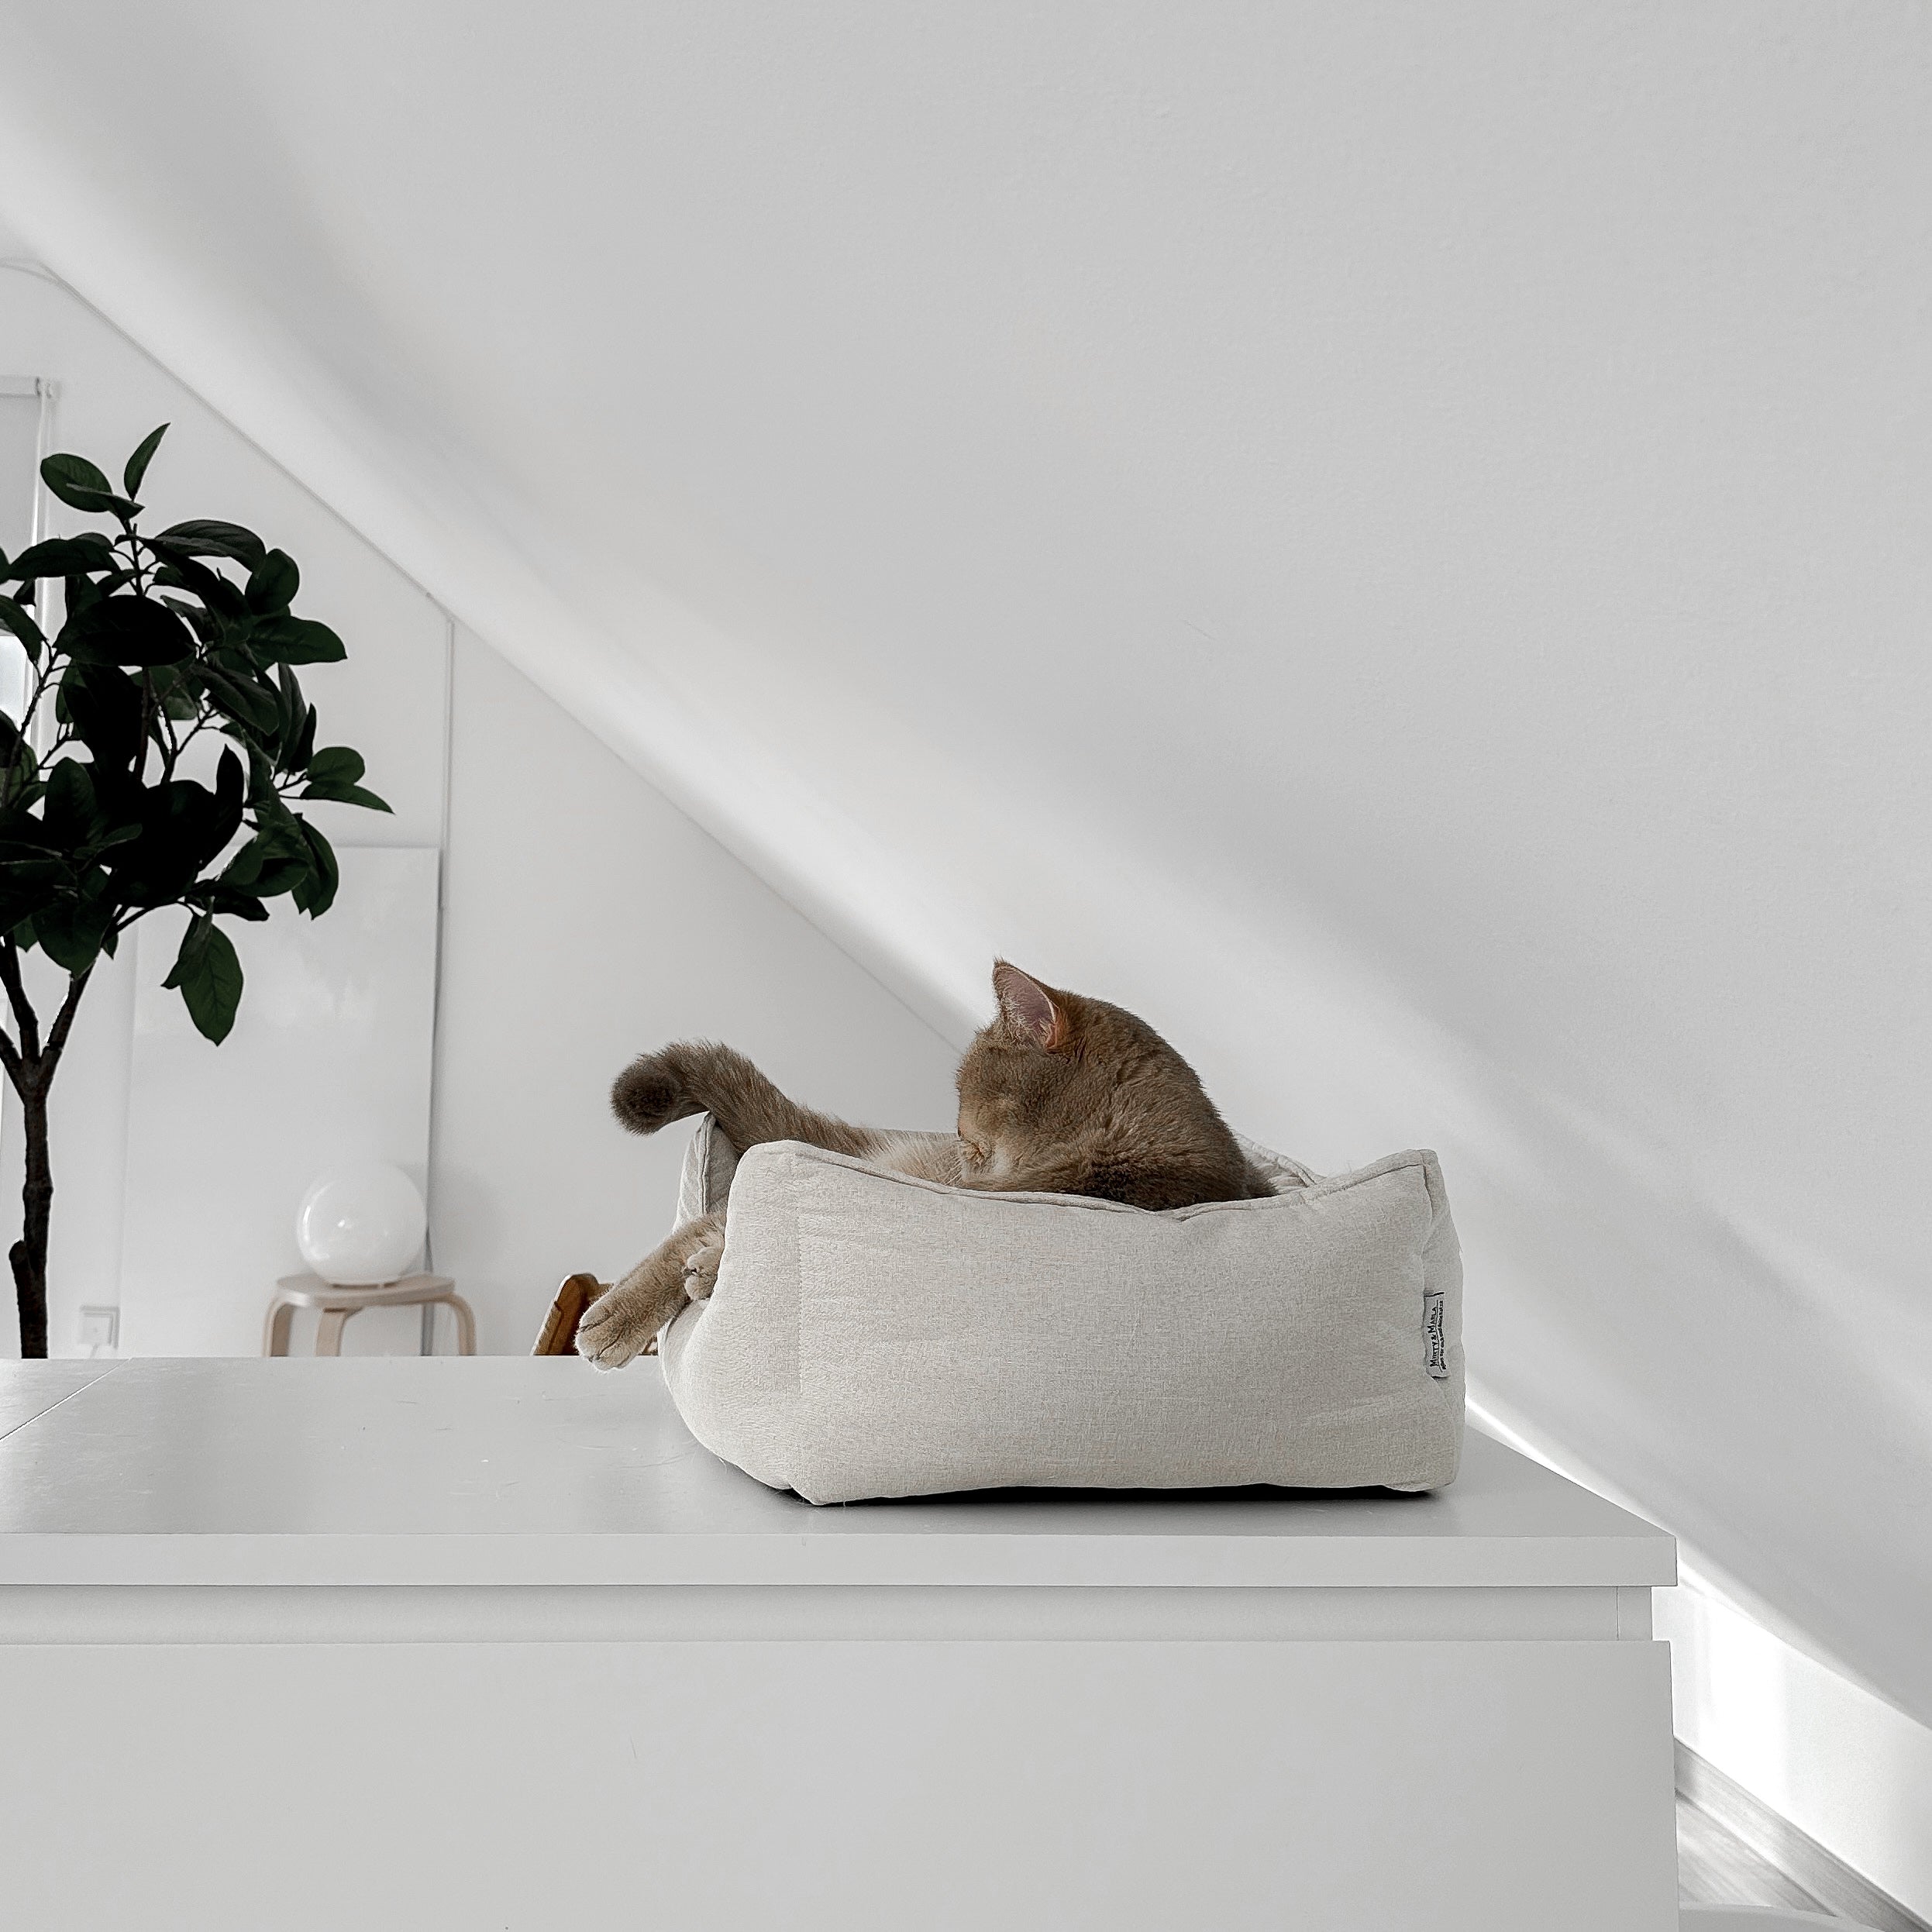 Schönes Körbchen für Katzen mit gemütlichen Innenkissen und anti-rutsch Unterseite als Rückzugsort für deine Fellnasen. Katzenbett aus hochwertigem Material in einer hellen und stilvollen Wohnung.